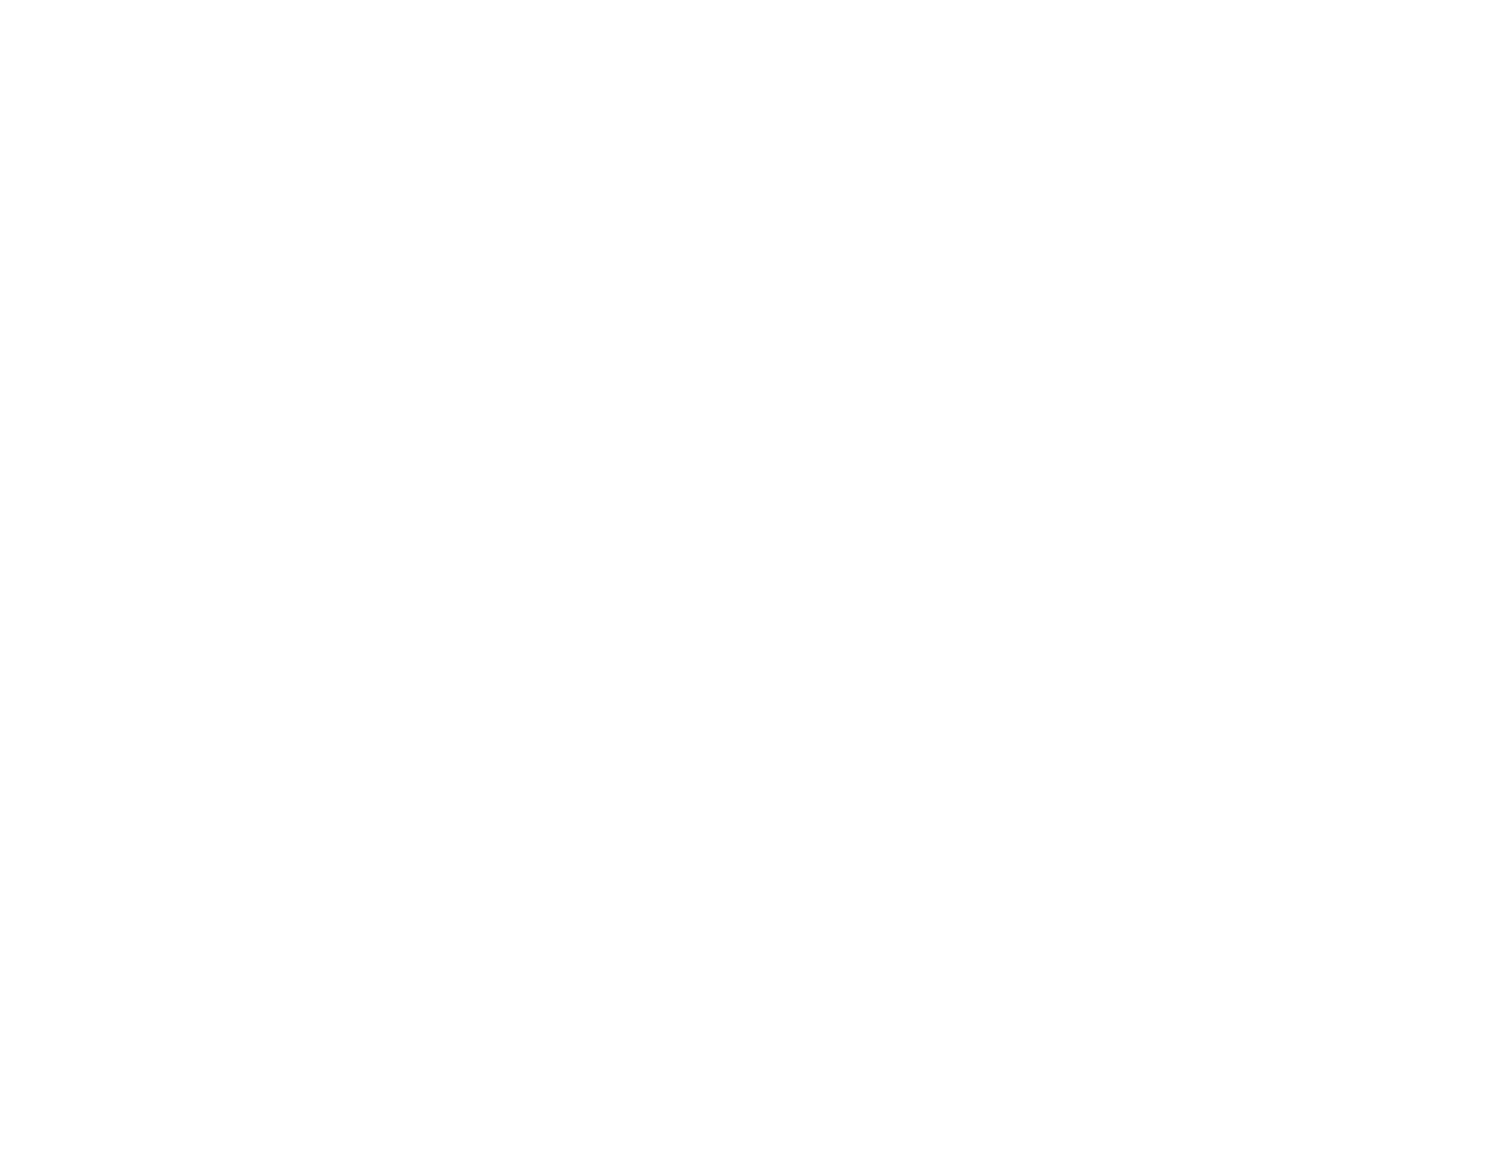 DD AirBags - AirBags für alle Action-Sportarten